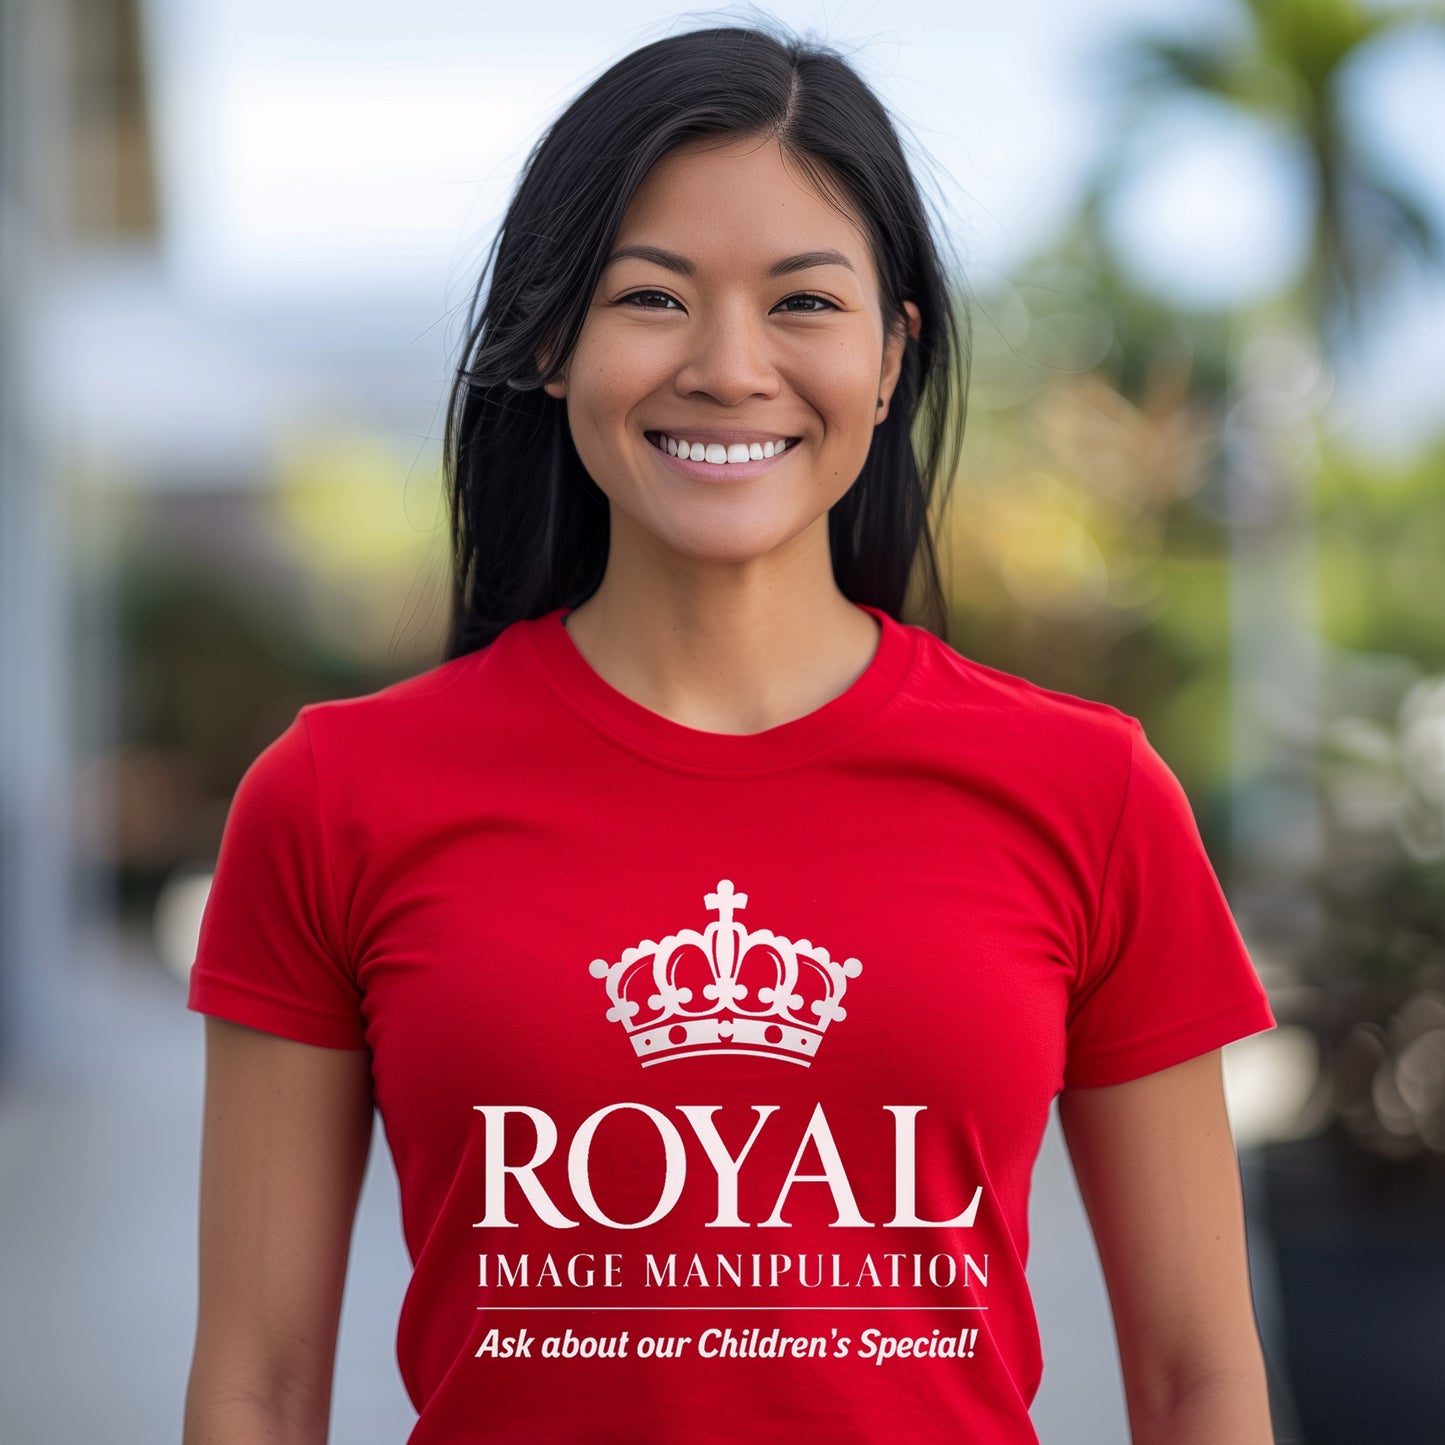 Royal Image Manipulation T-Shirt, Funny Royal Image Manipulation, Manipulate Royal Images, Funny Royal Children Image Manipulation T-Shirt